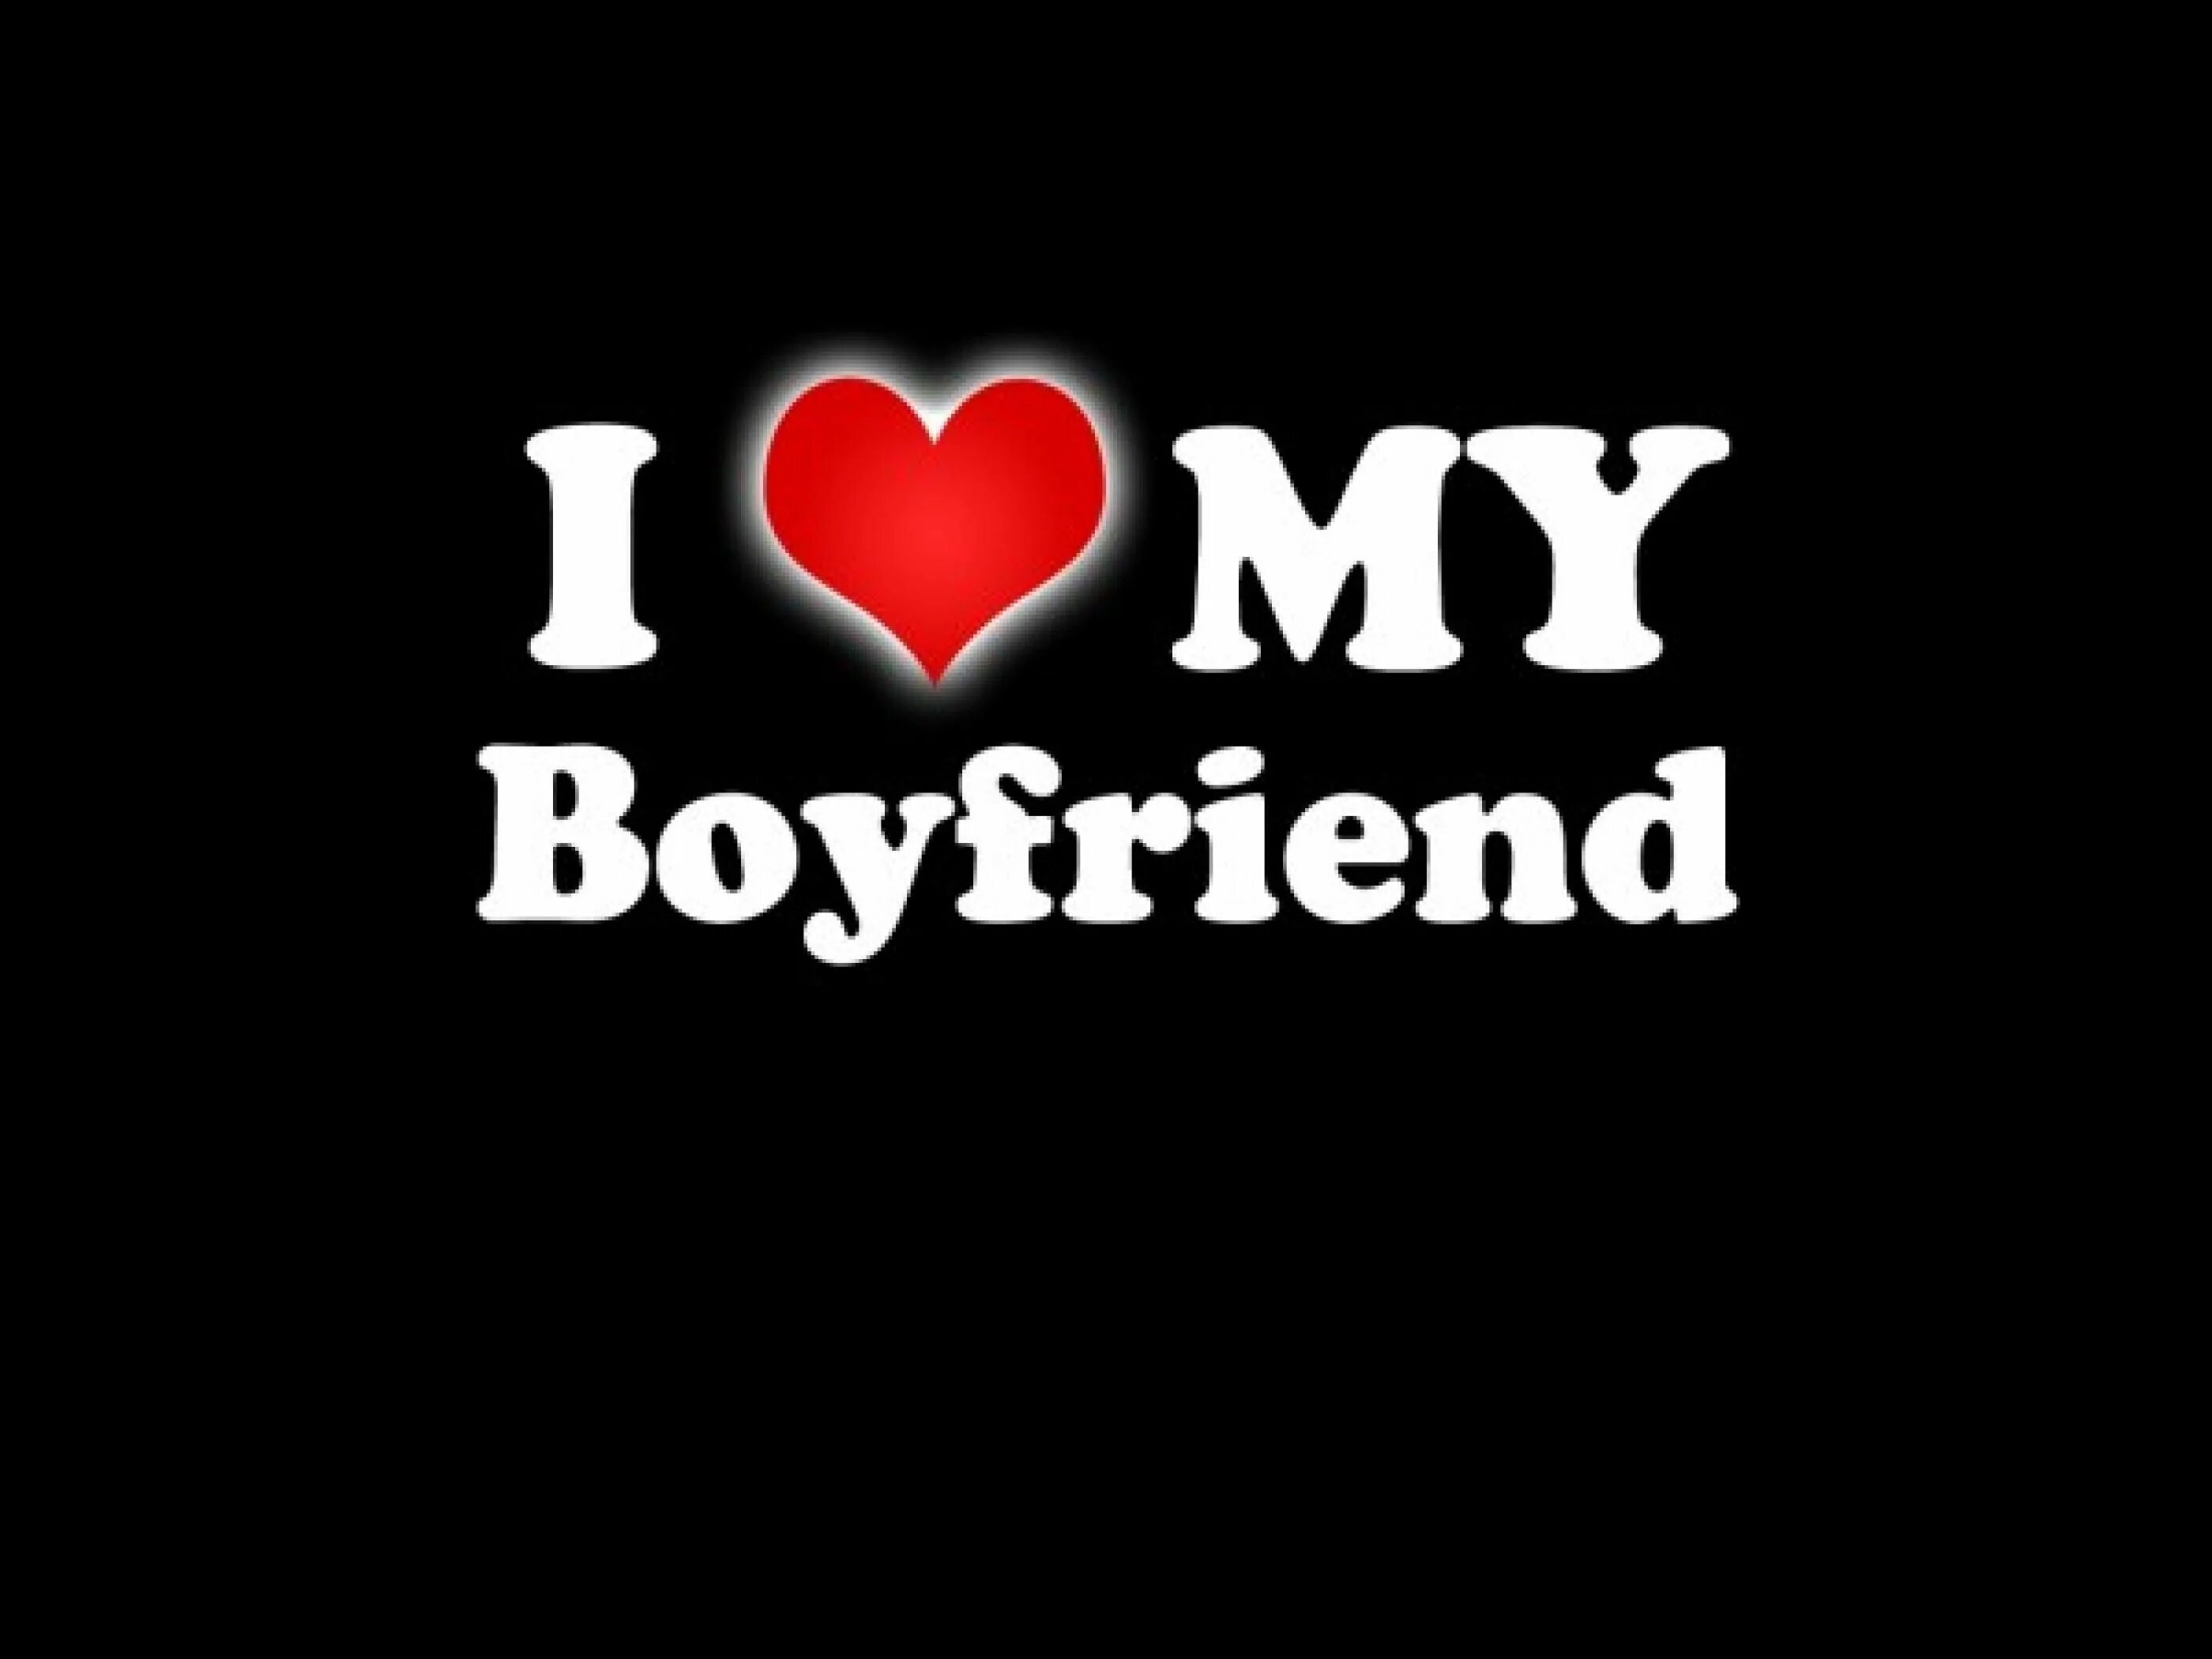 My best boyfriend. I Love my boyfriend. Обои i Love my boyfriend. I Love my boyfriend картинка. Boyfriend надпись.